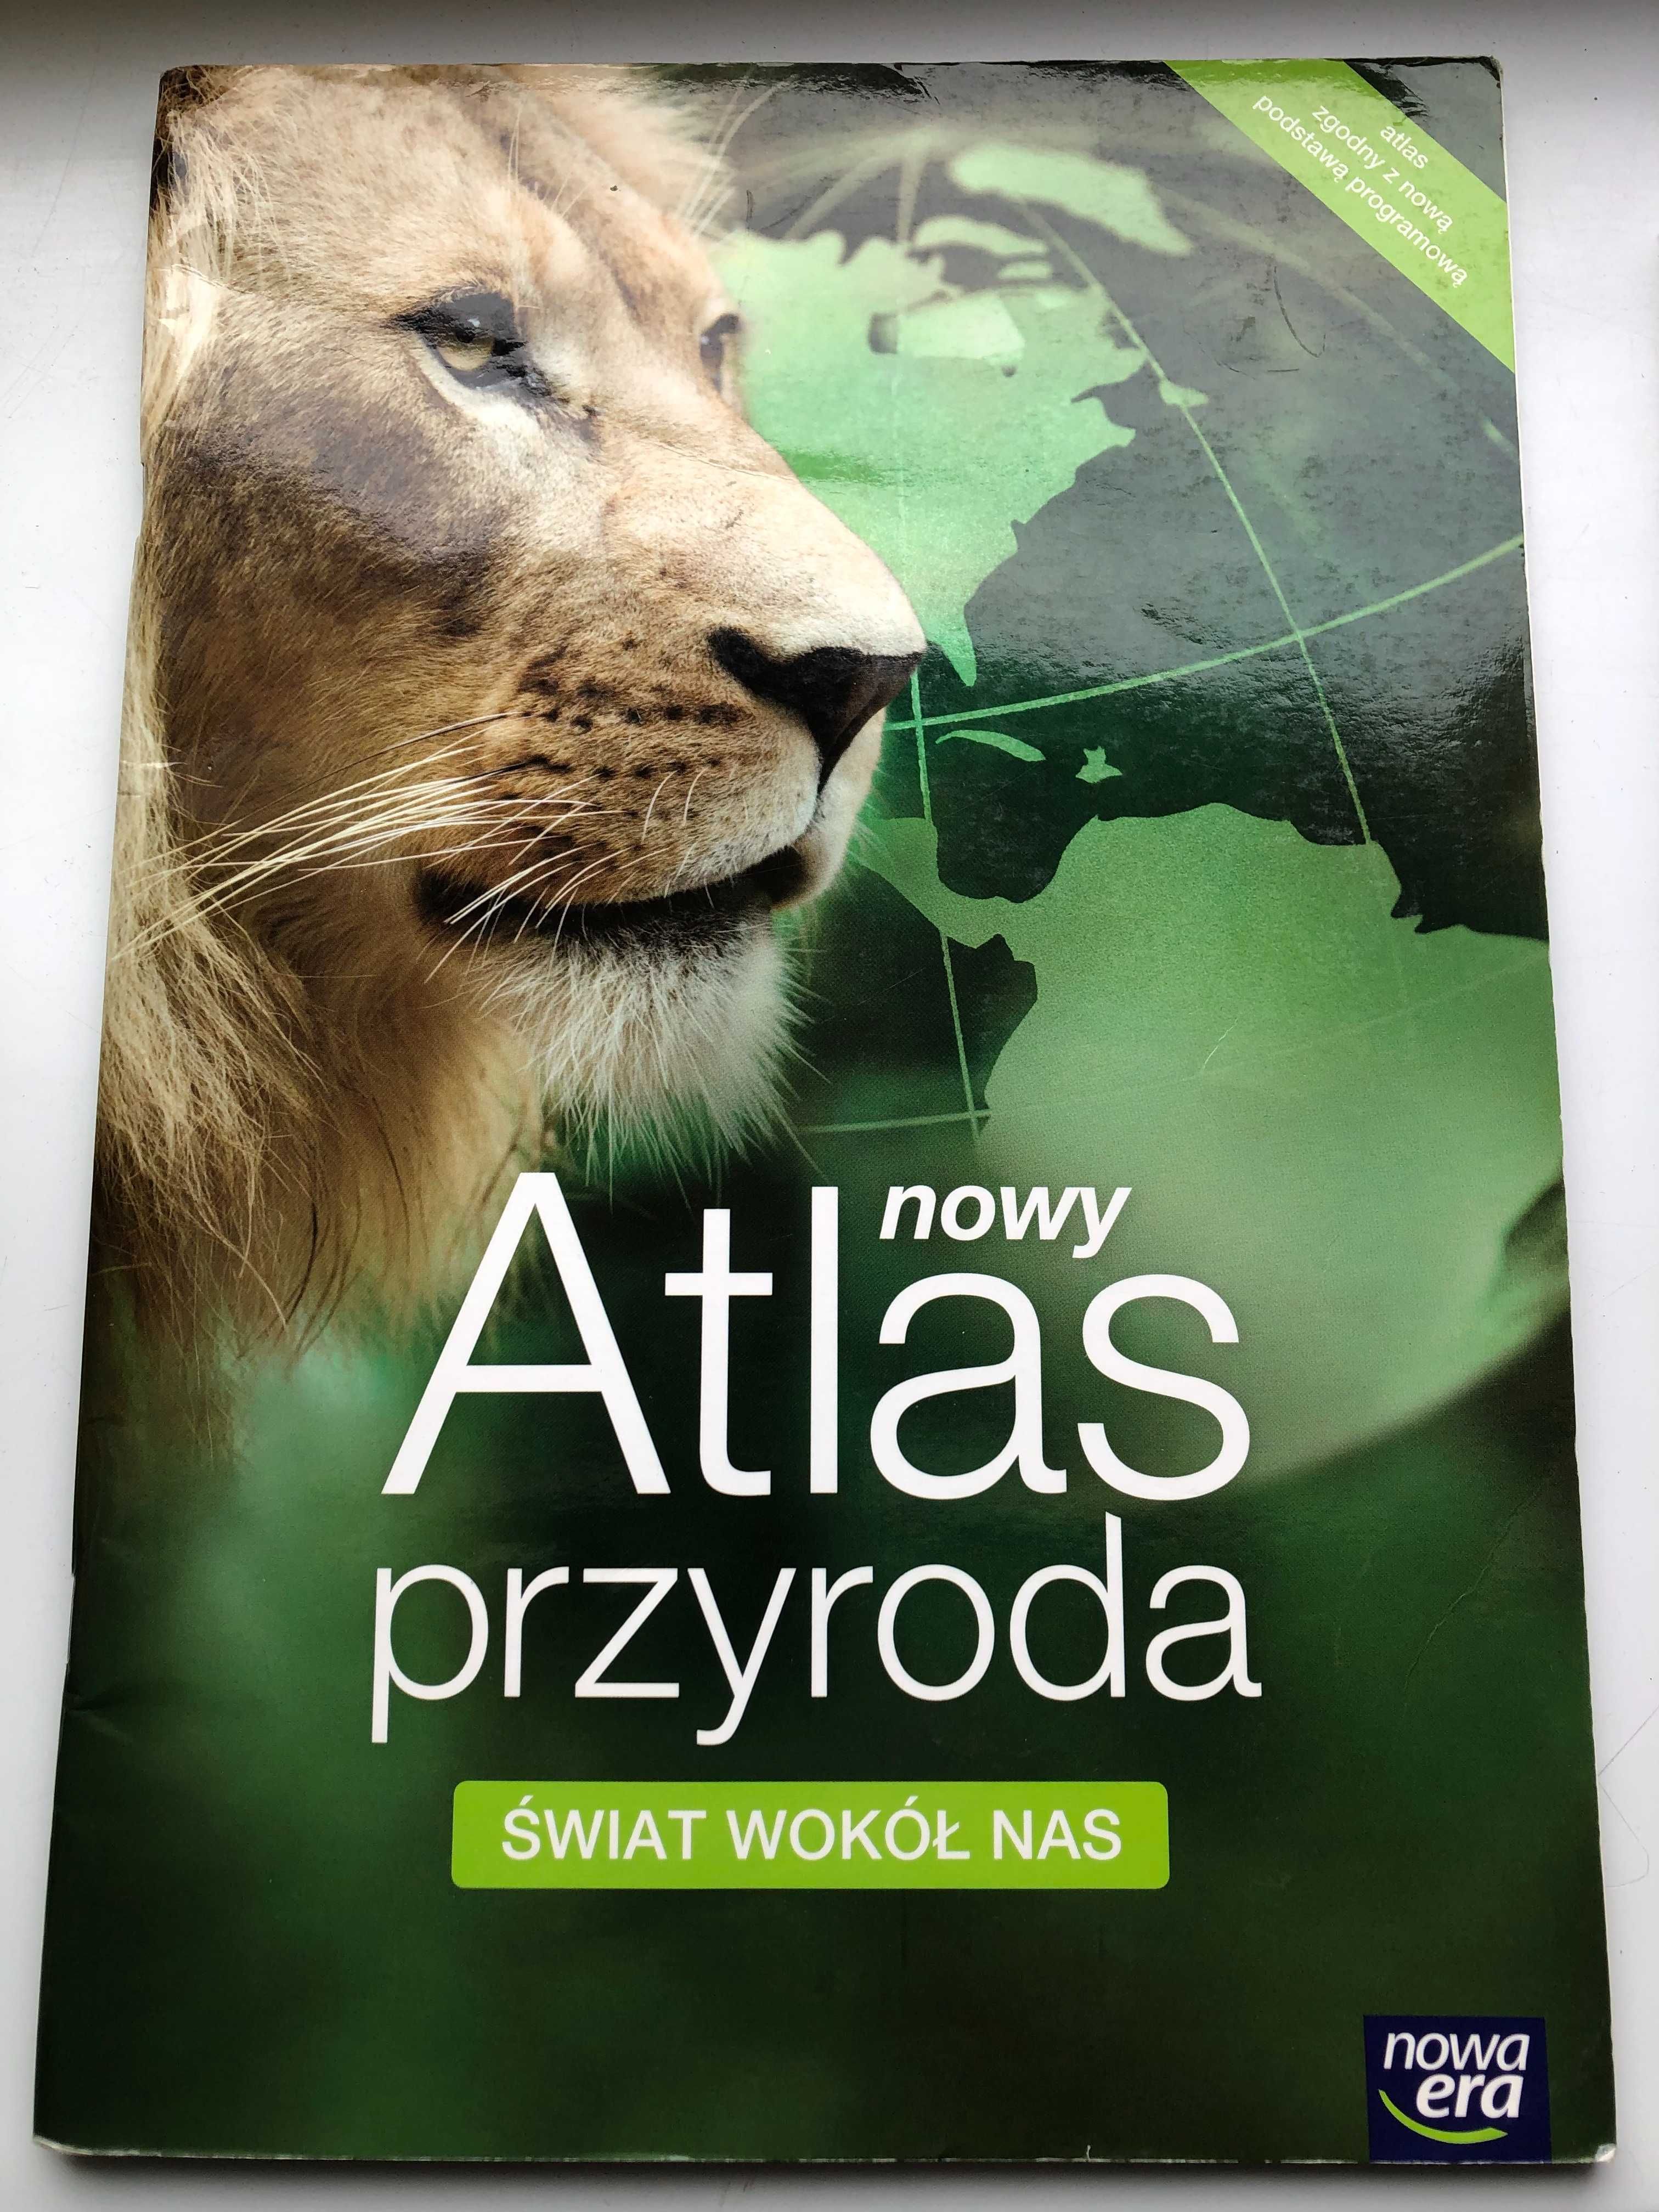 Atlas przyroda.  Świat wokół nas
Szkoła podstawowa klasy 4-6